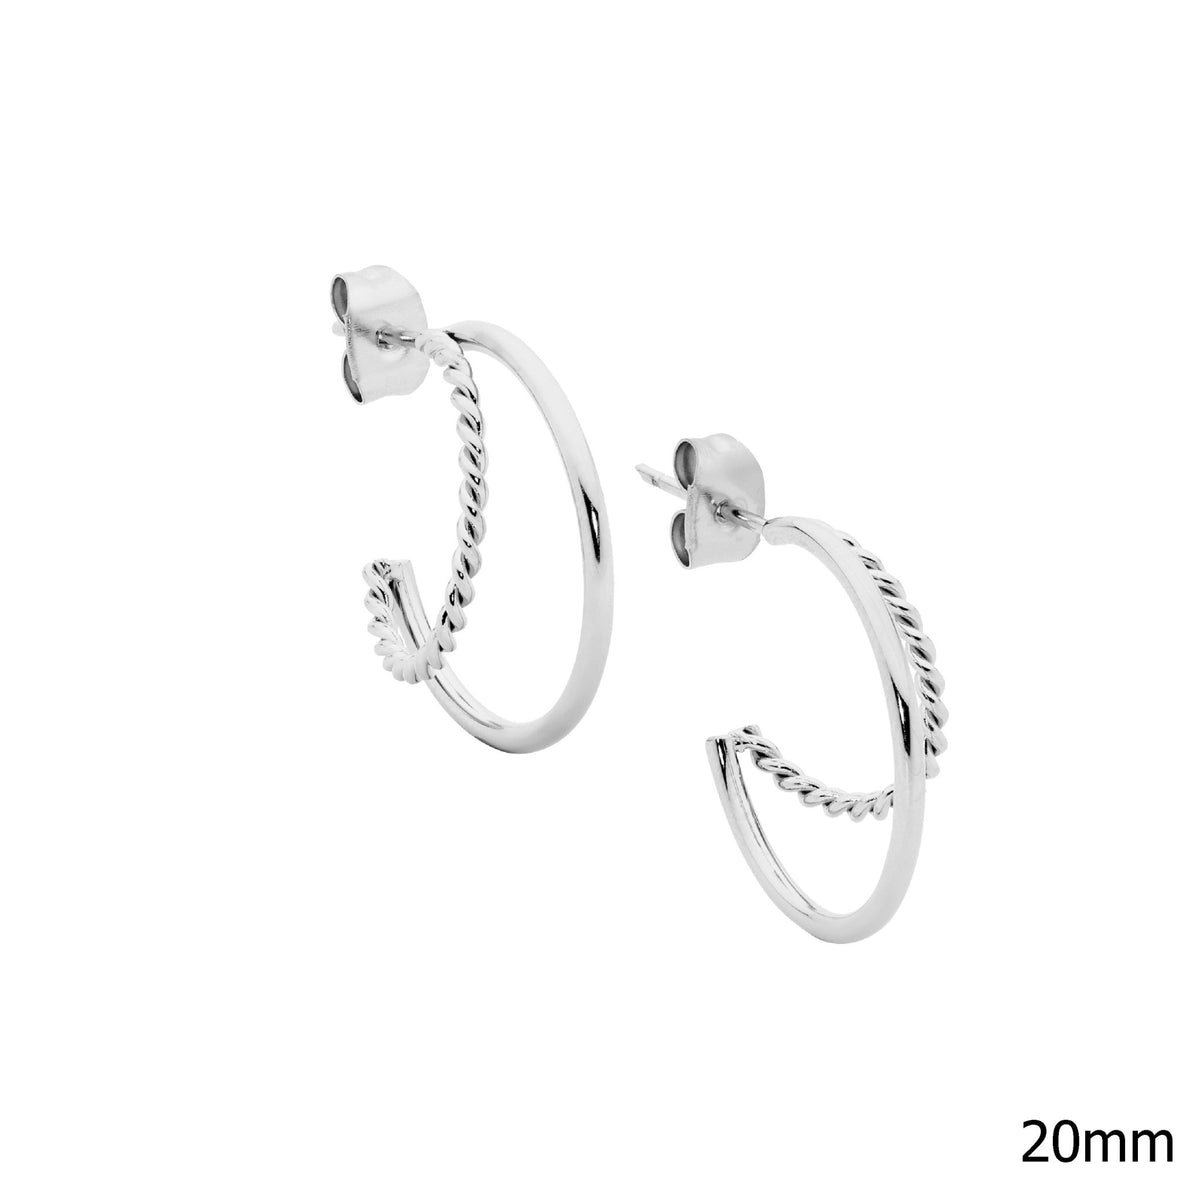 Stainless Steel Earring Gold - SE265G - Markbridge Jewellers